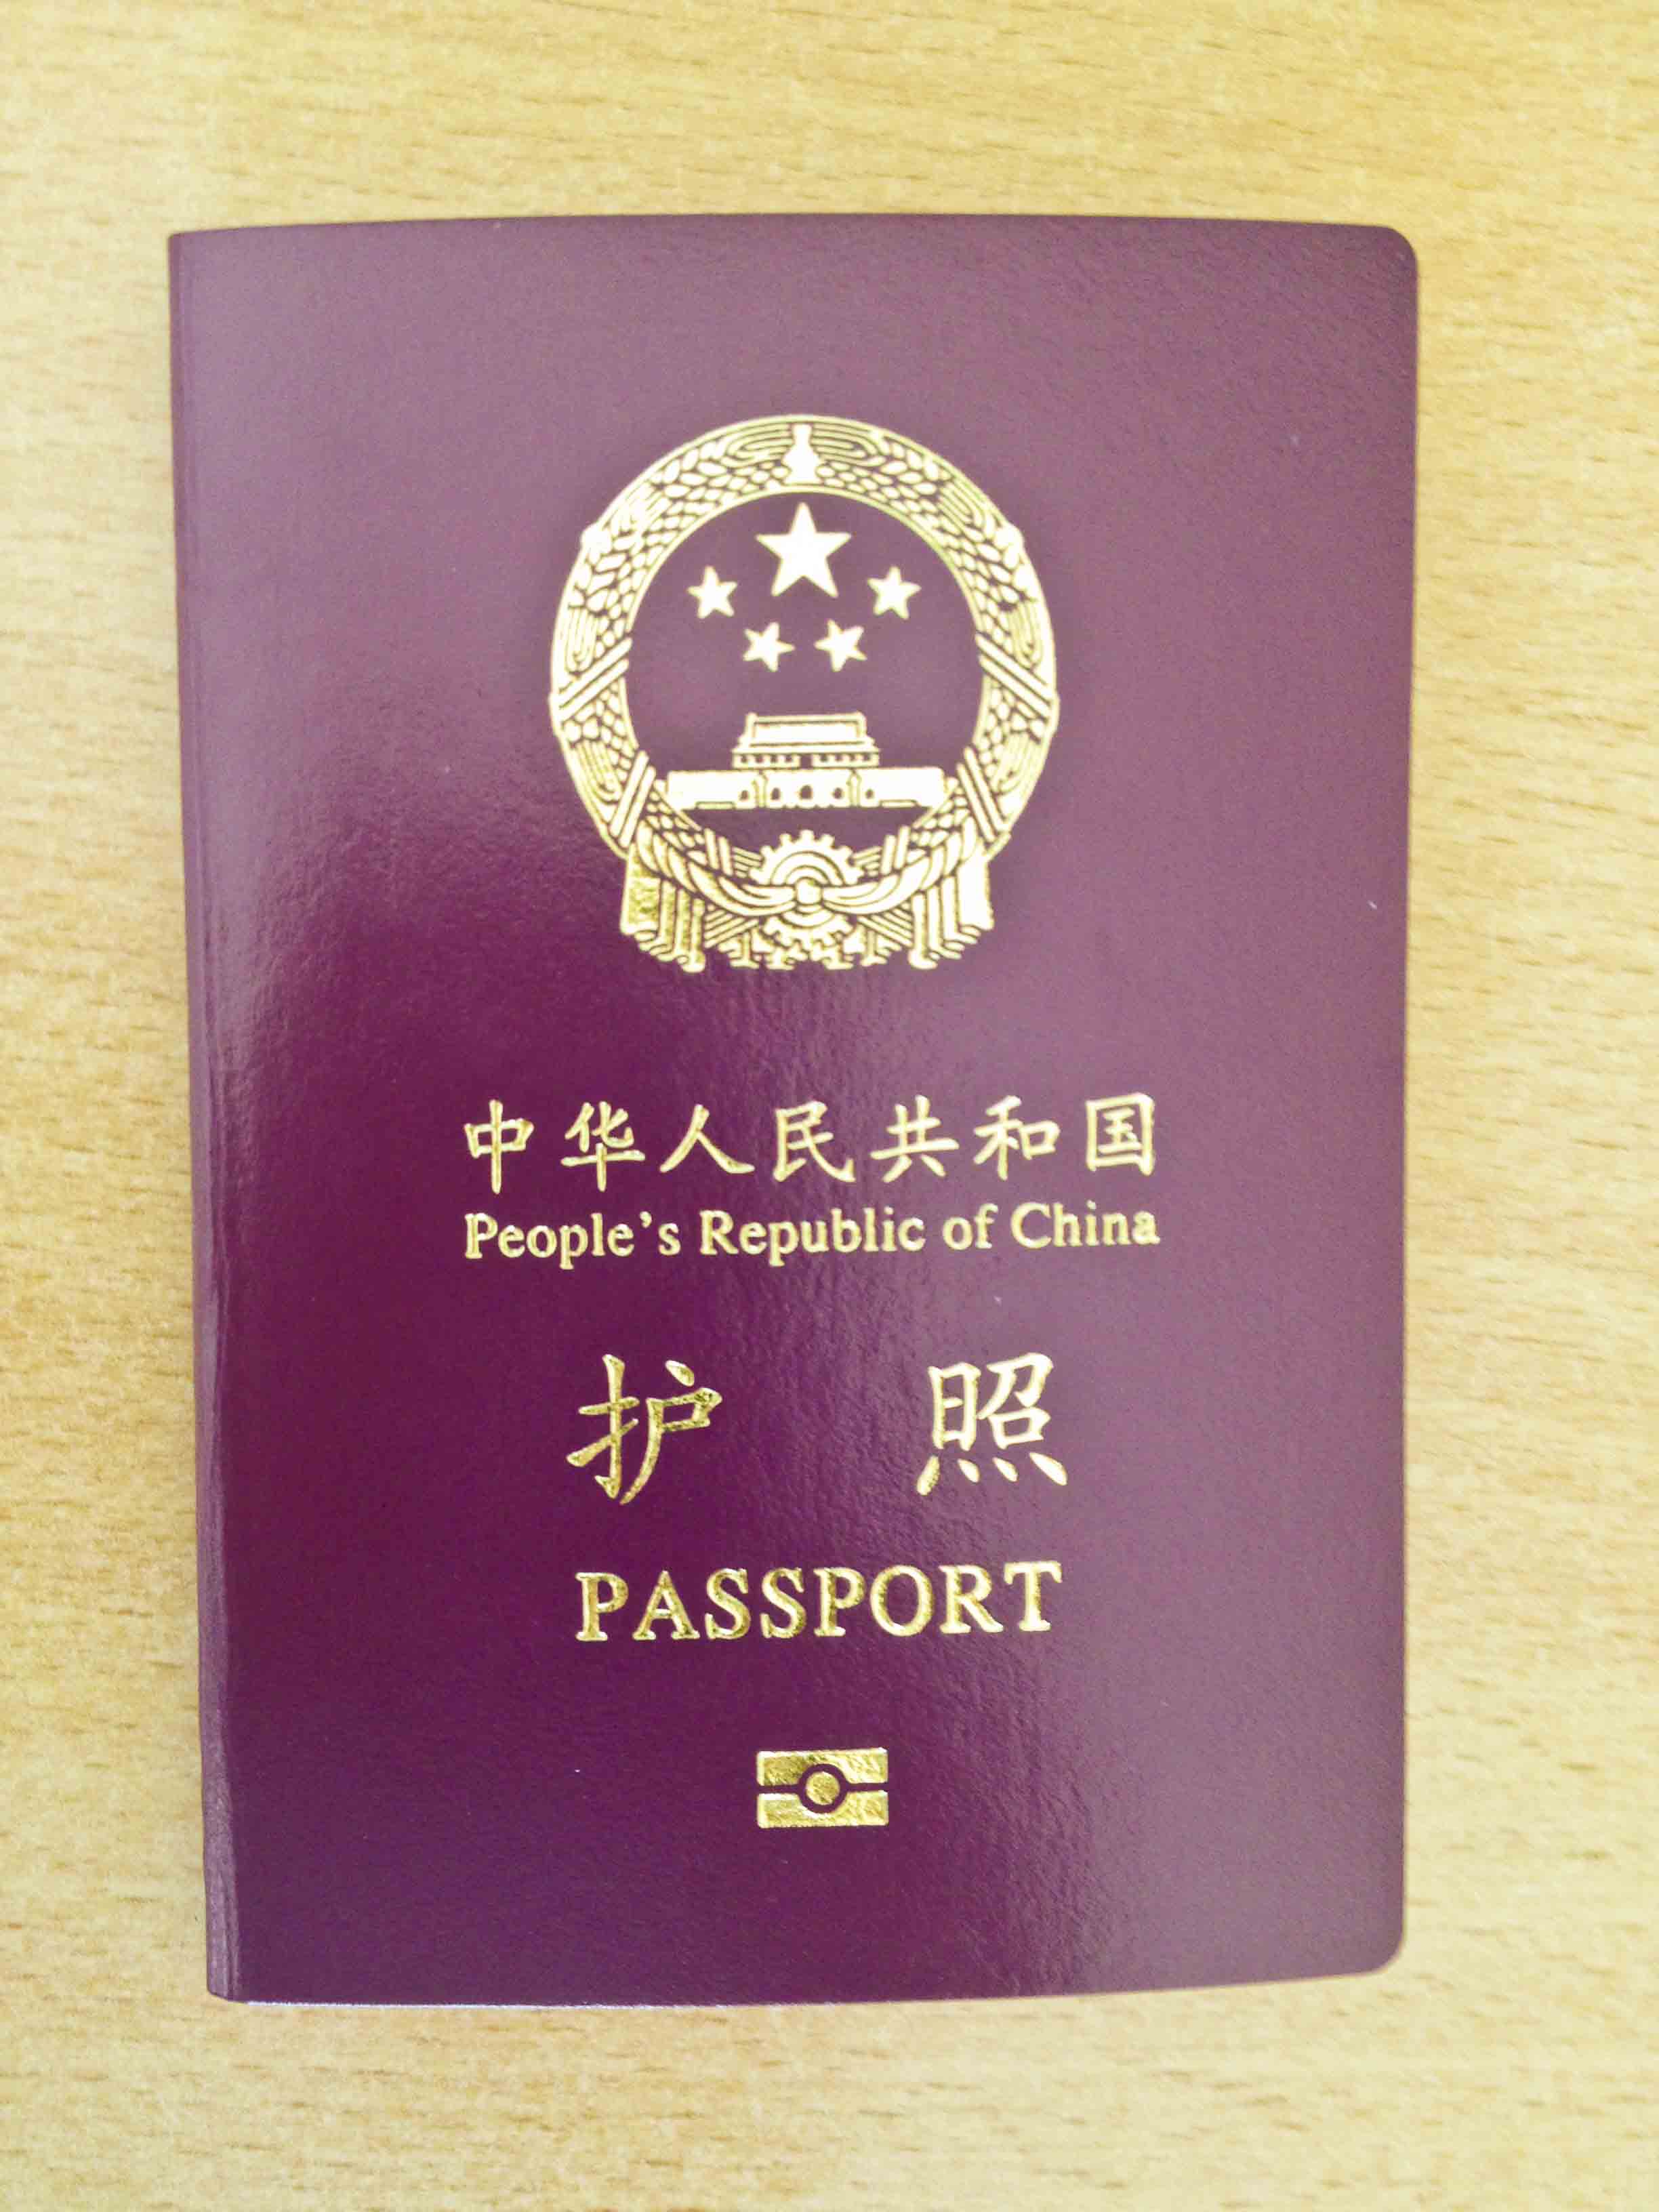 [越南签证要求2024] 中国人申请越南签证的所有信息|免签、签证有效、材料、处理时间、手续以及申请方法 | Vietnamimmigration.com official website ...